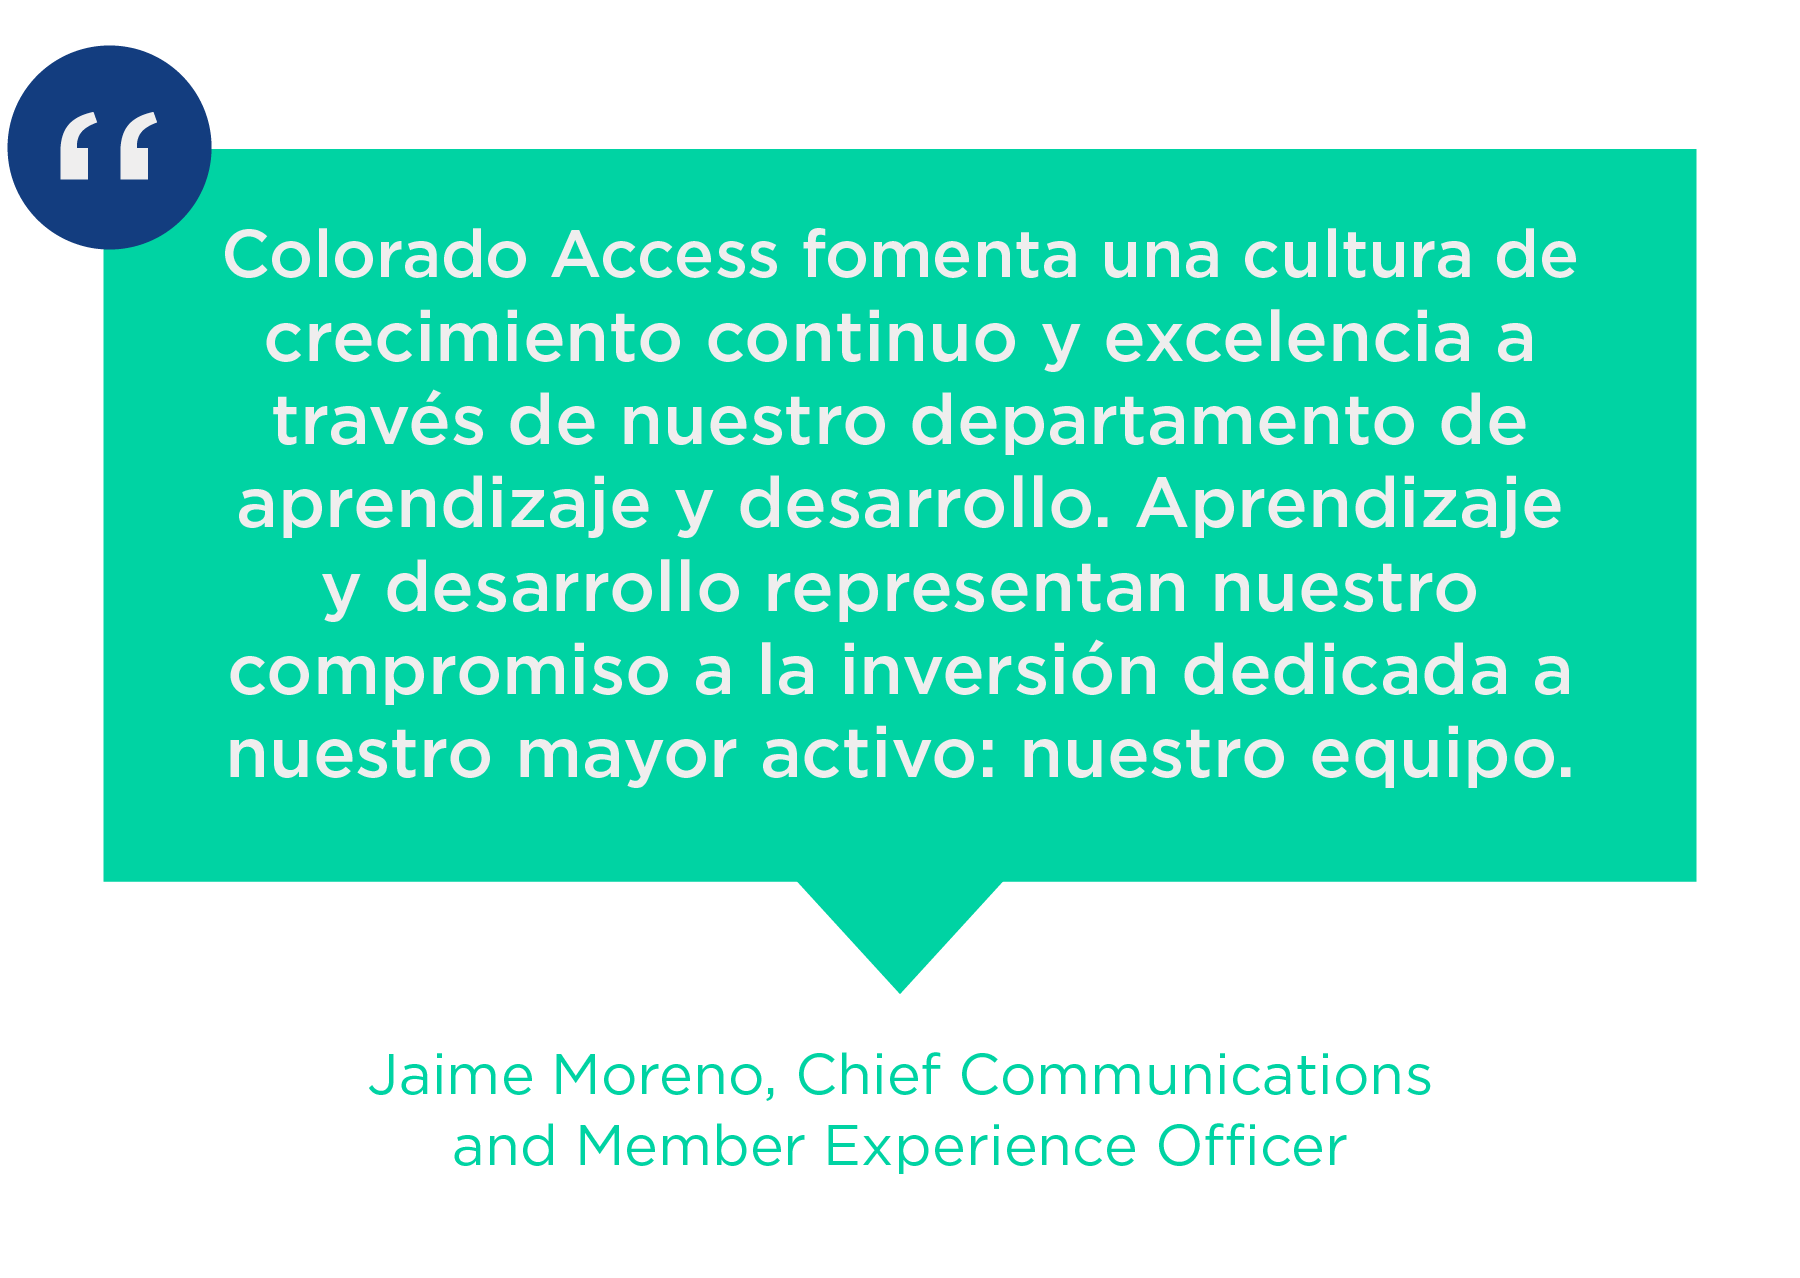 Colorado Access fomenta una cultura de crecimiento continuo y excelencia a través de nuestro departamento de aprendizaje y desarrollo. Aprendizaje y desarrollo atstovas nuestro compromiso a la inversión dedicada a nuestro Mayor Activo: nuestro equipo